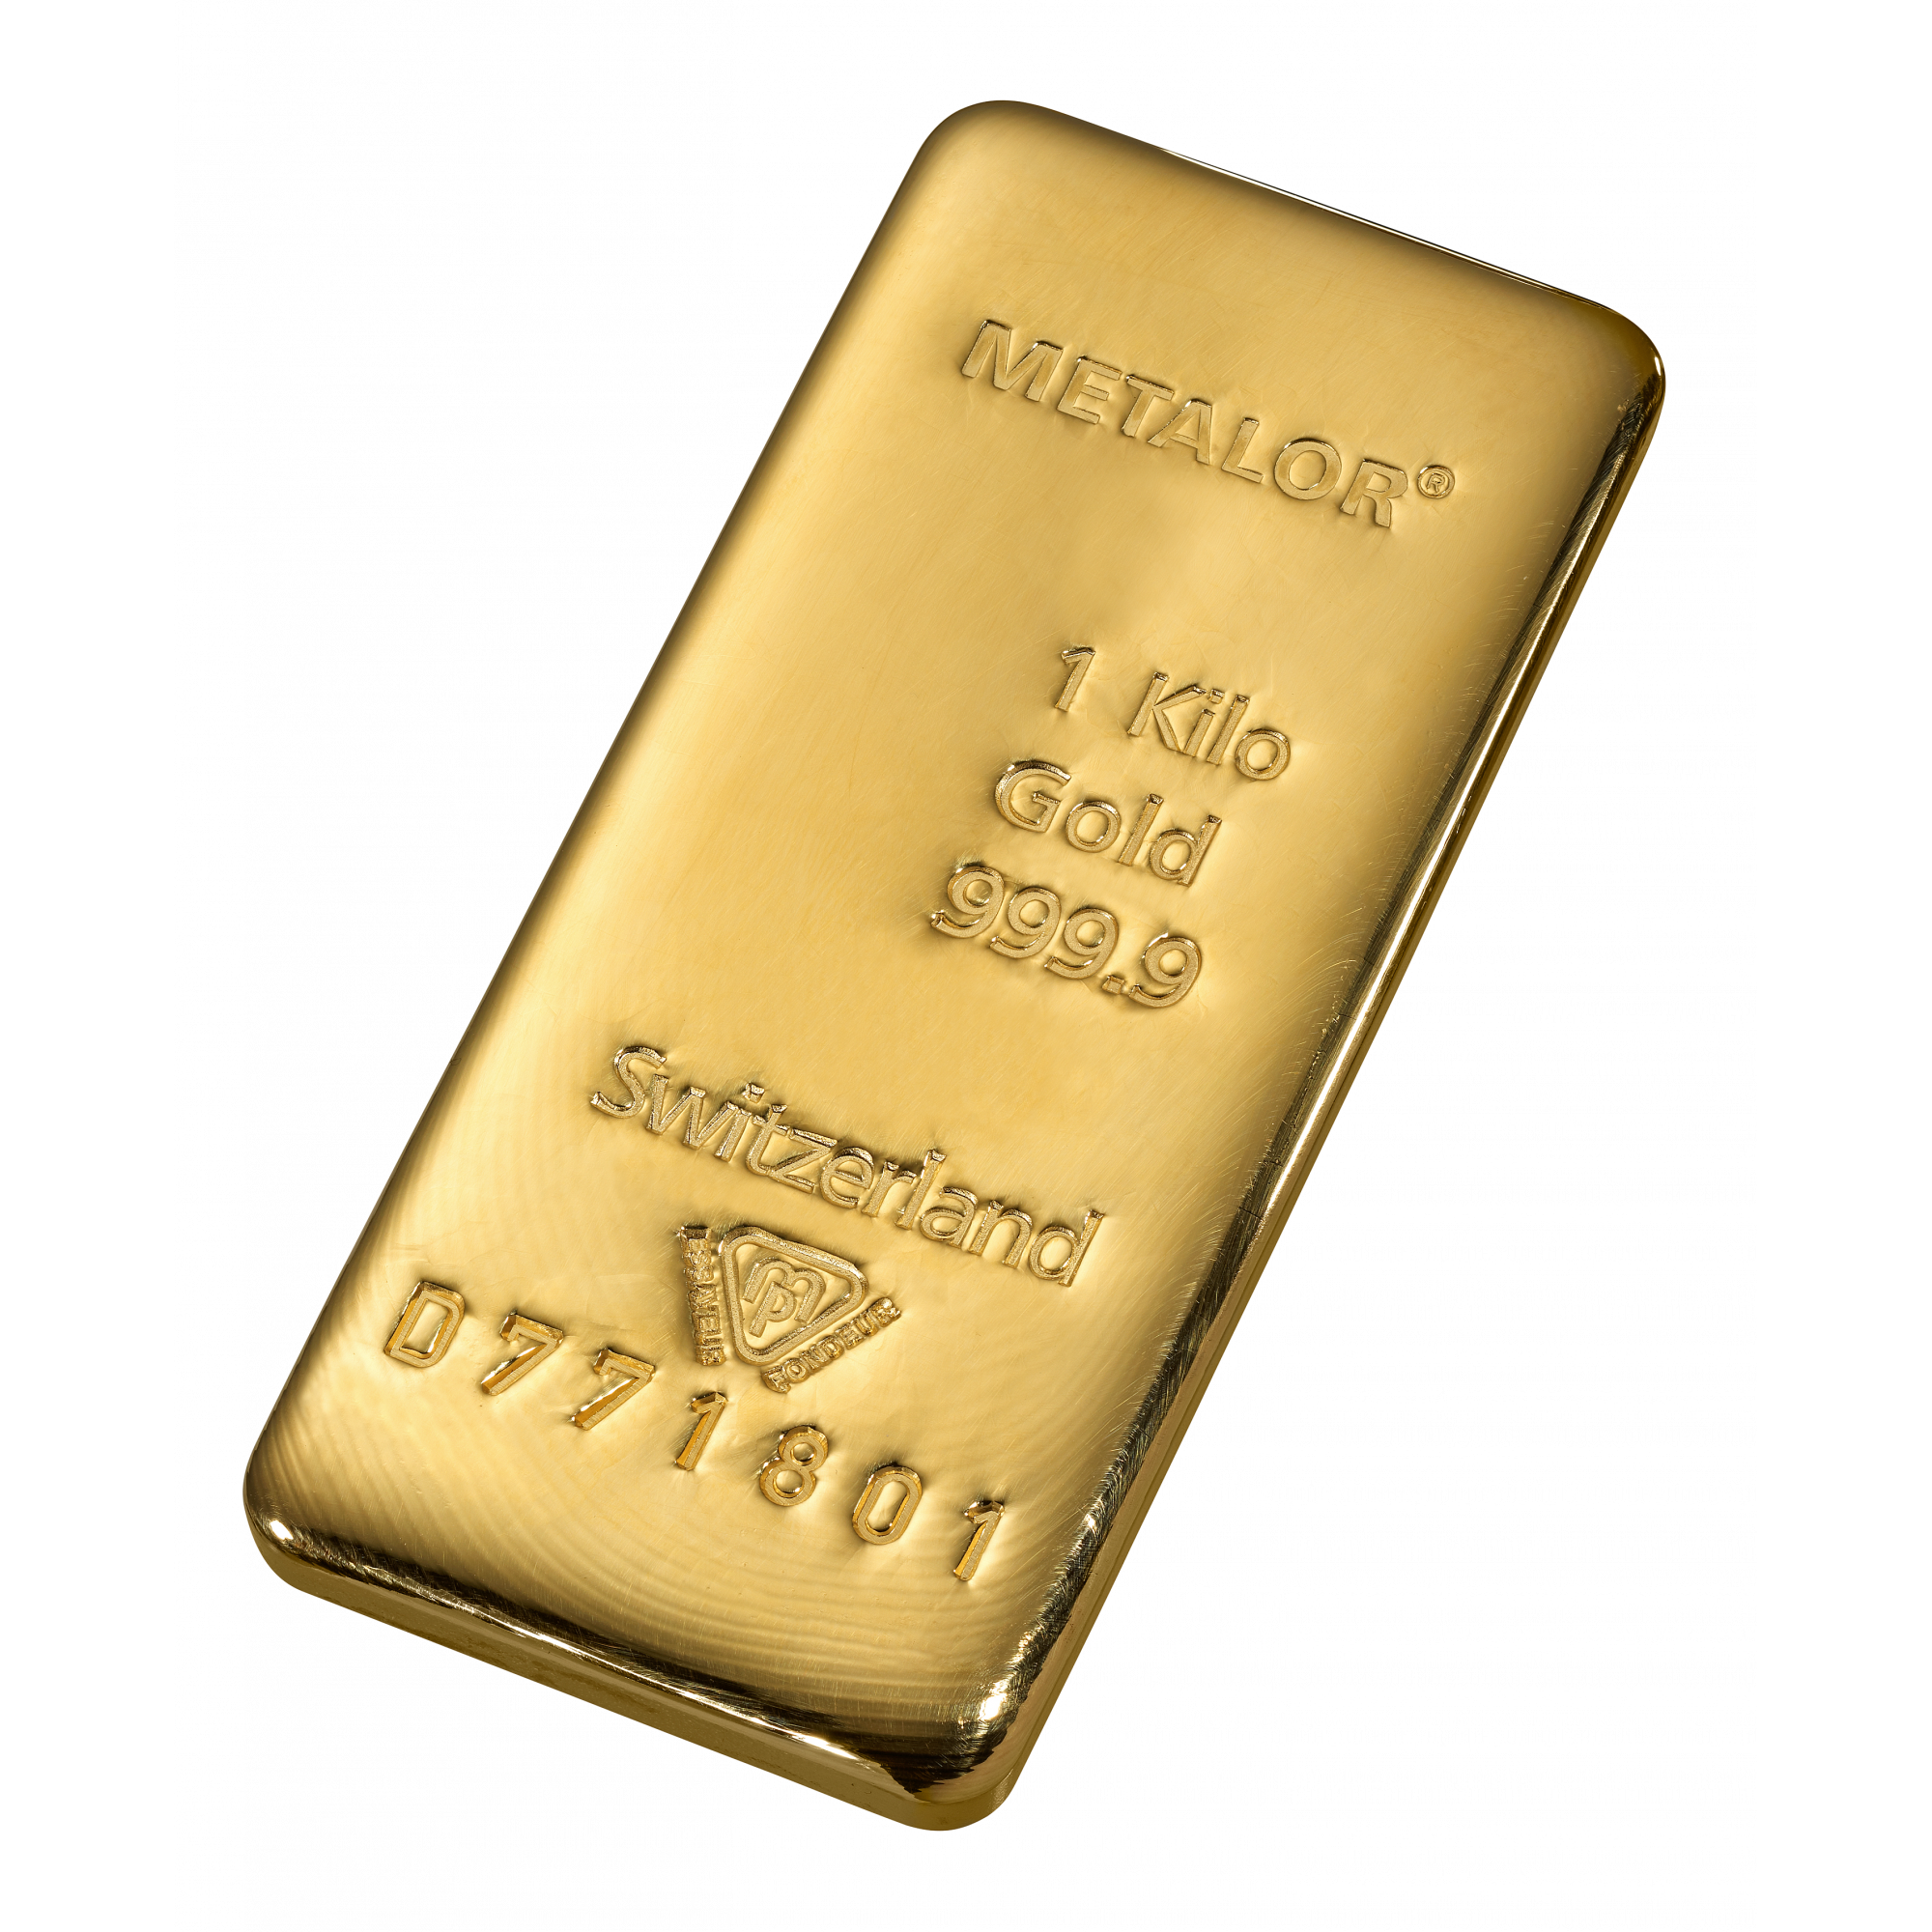 schrobben katje Rouwen 1 kilo goud - Aankoop en verkoop goudprijs - beleggen in goud